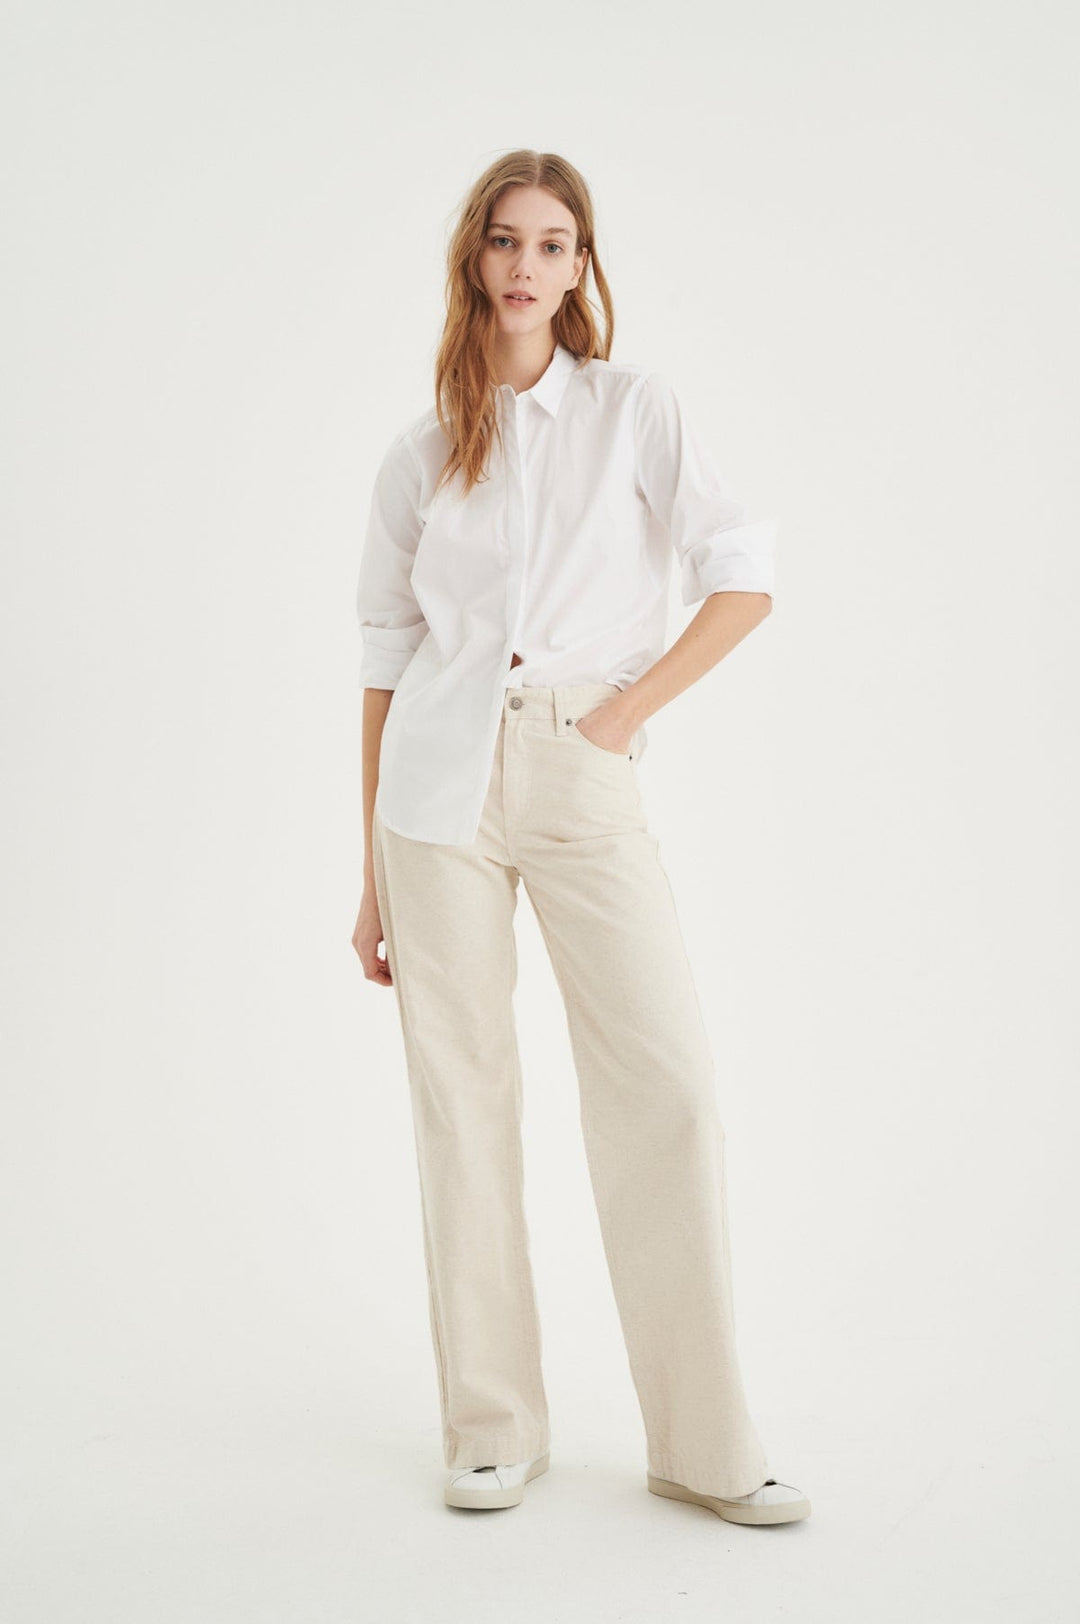 Venus Shirt Pure White | Skjorter og bluser | Smuk - Dameklær på nett